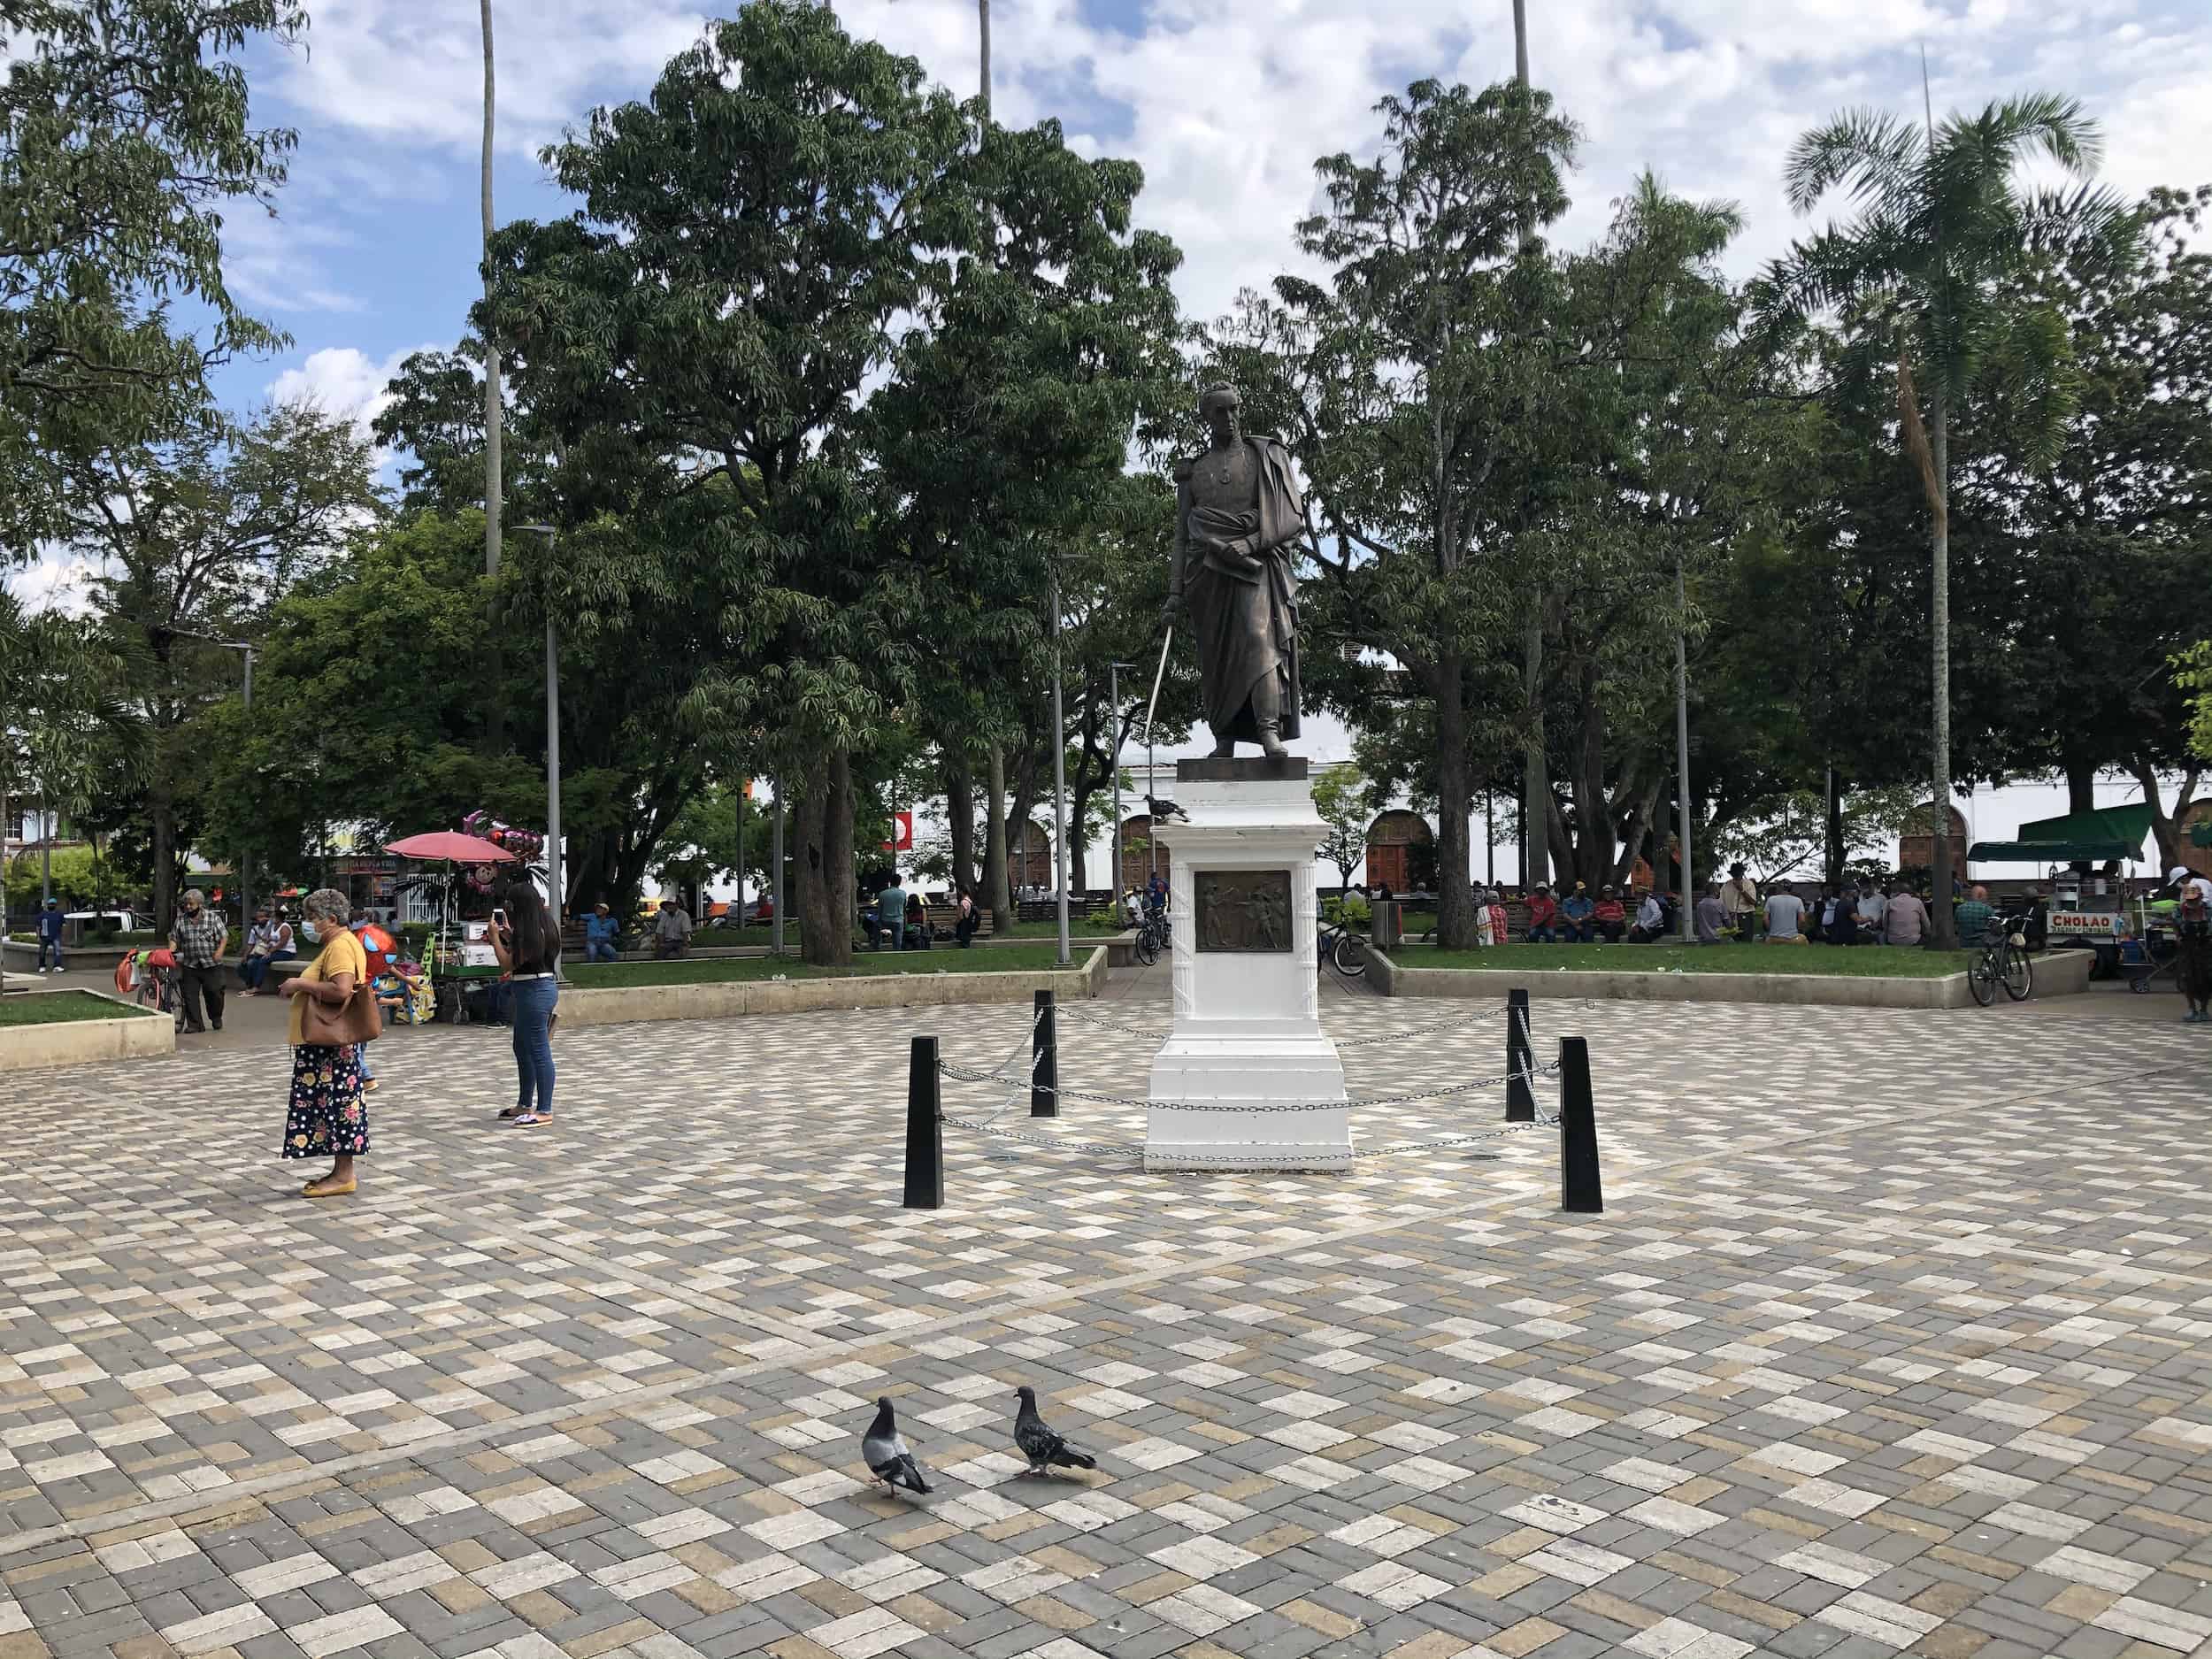 Statue of Simón Bolívar in Parque de Bolívar